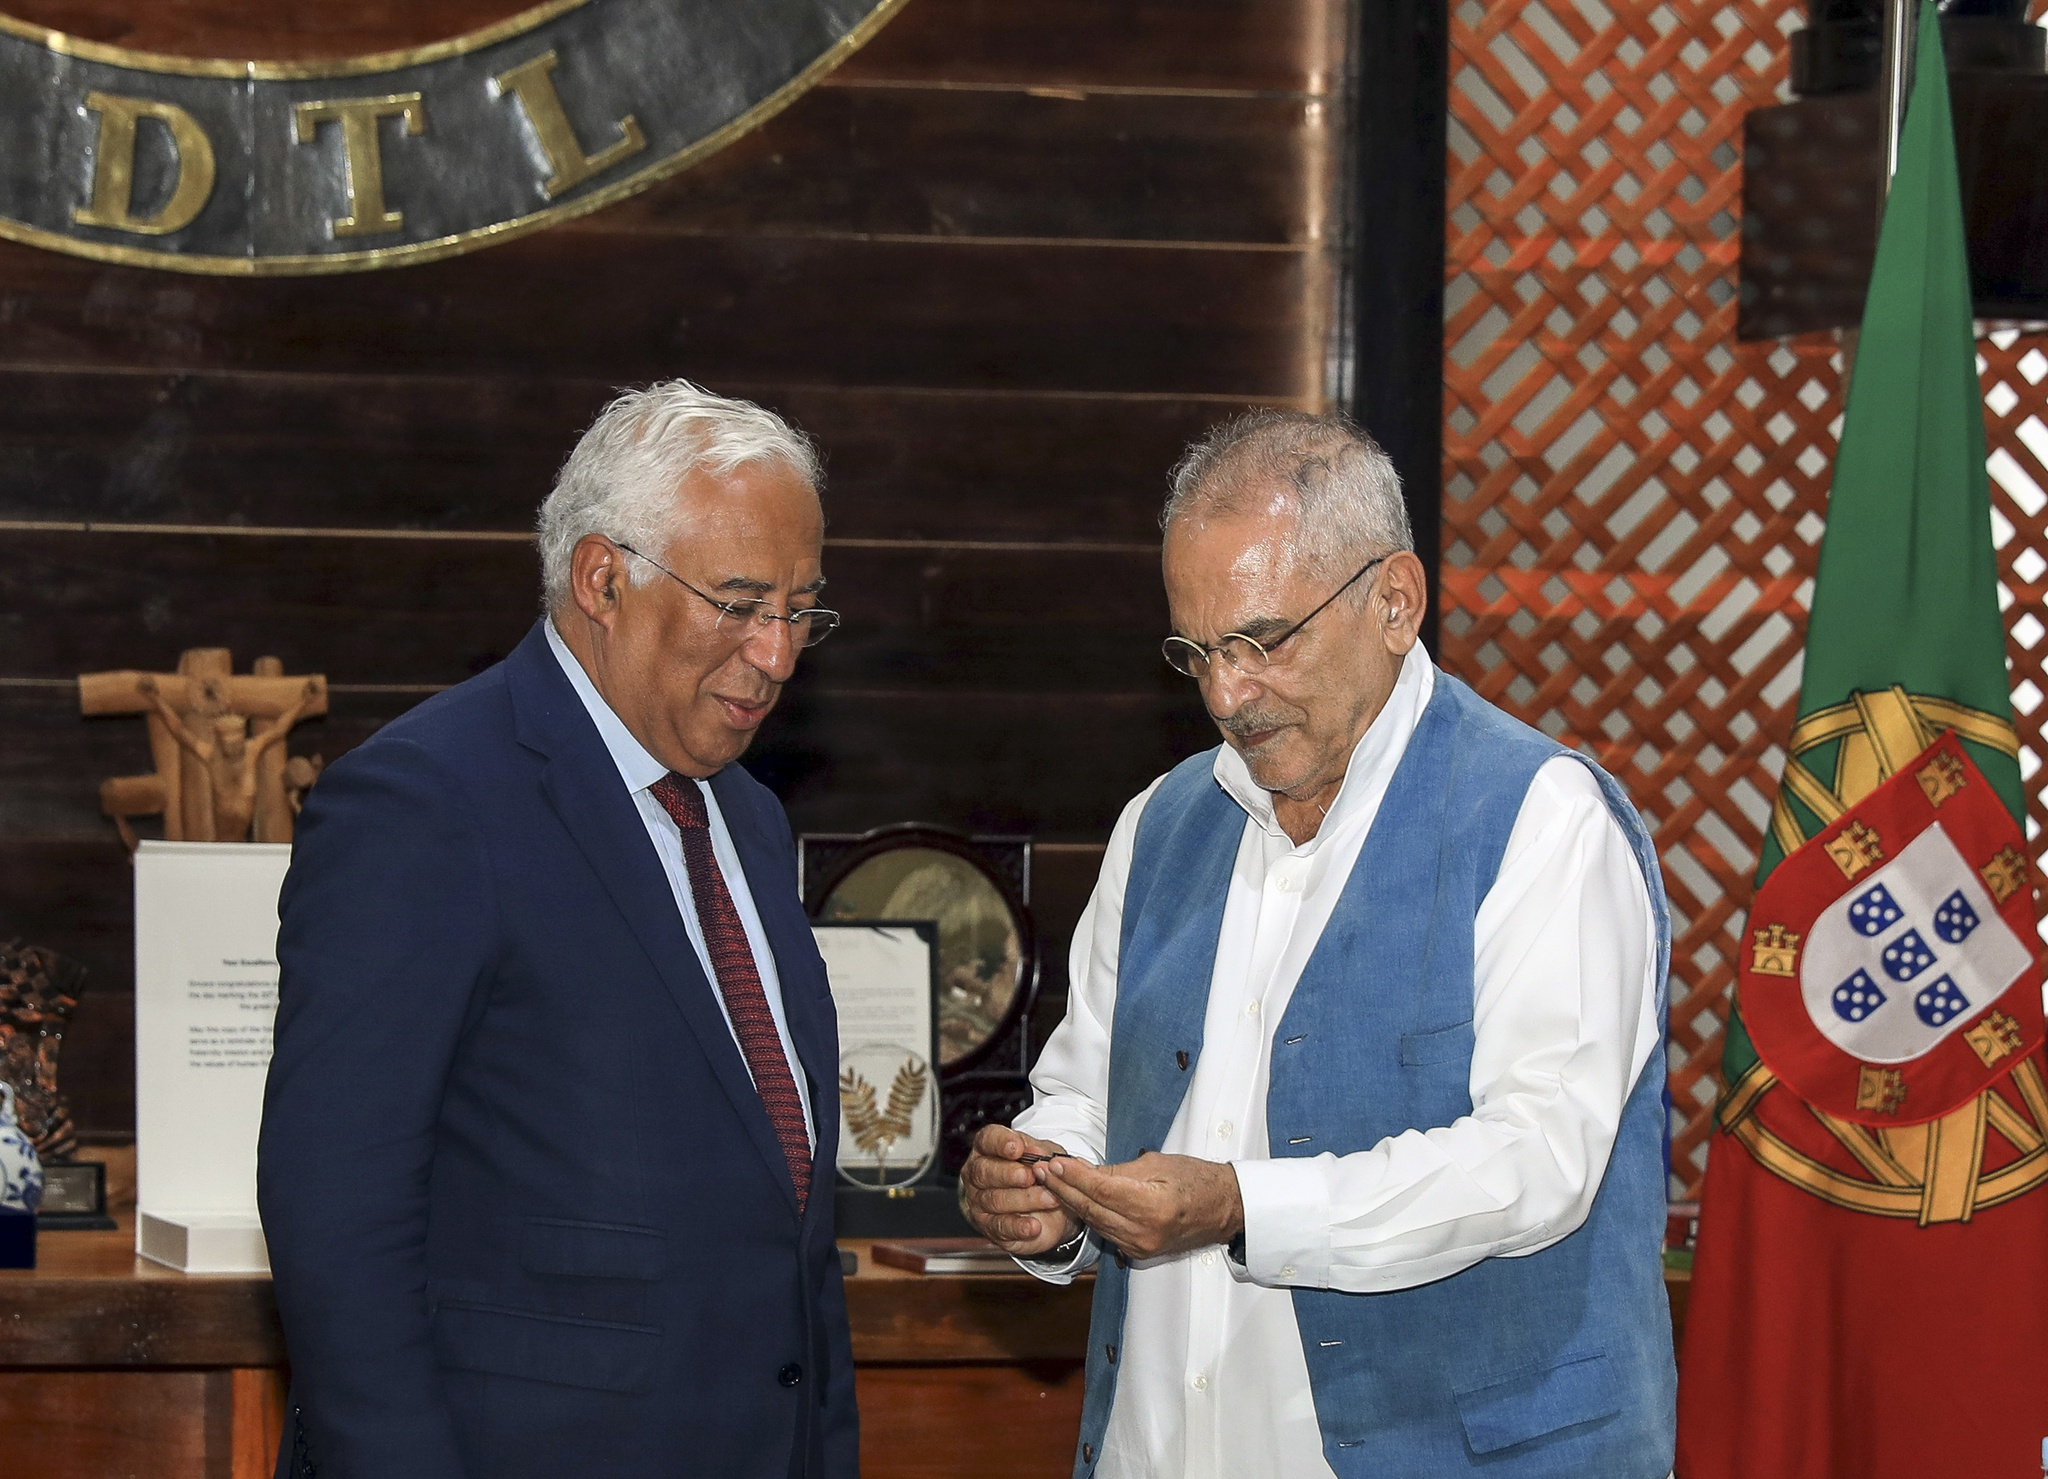 O reforço do ensino do português em Timor-Leste <br> e o Centro Cultural em Díli com o nome Jorge Sampaio